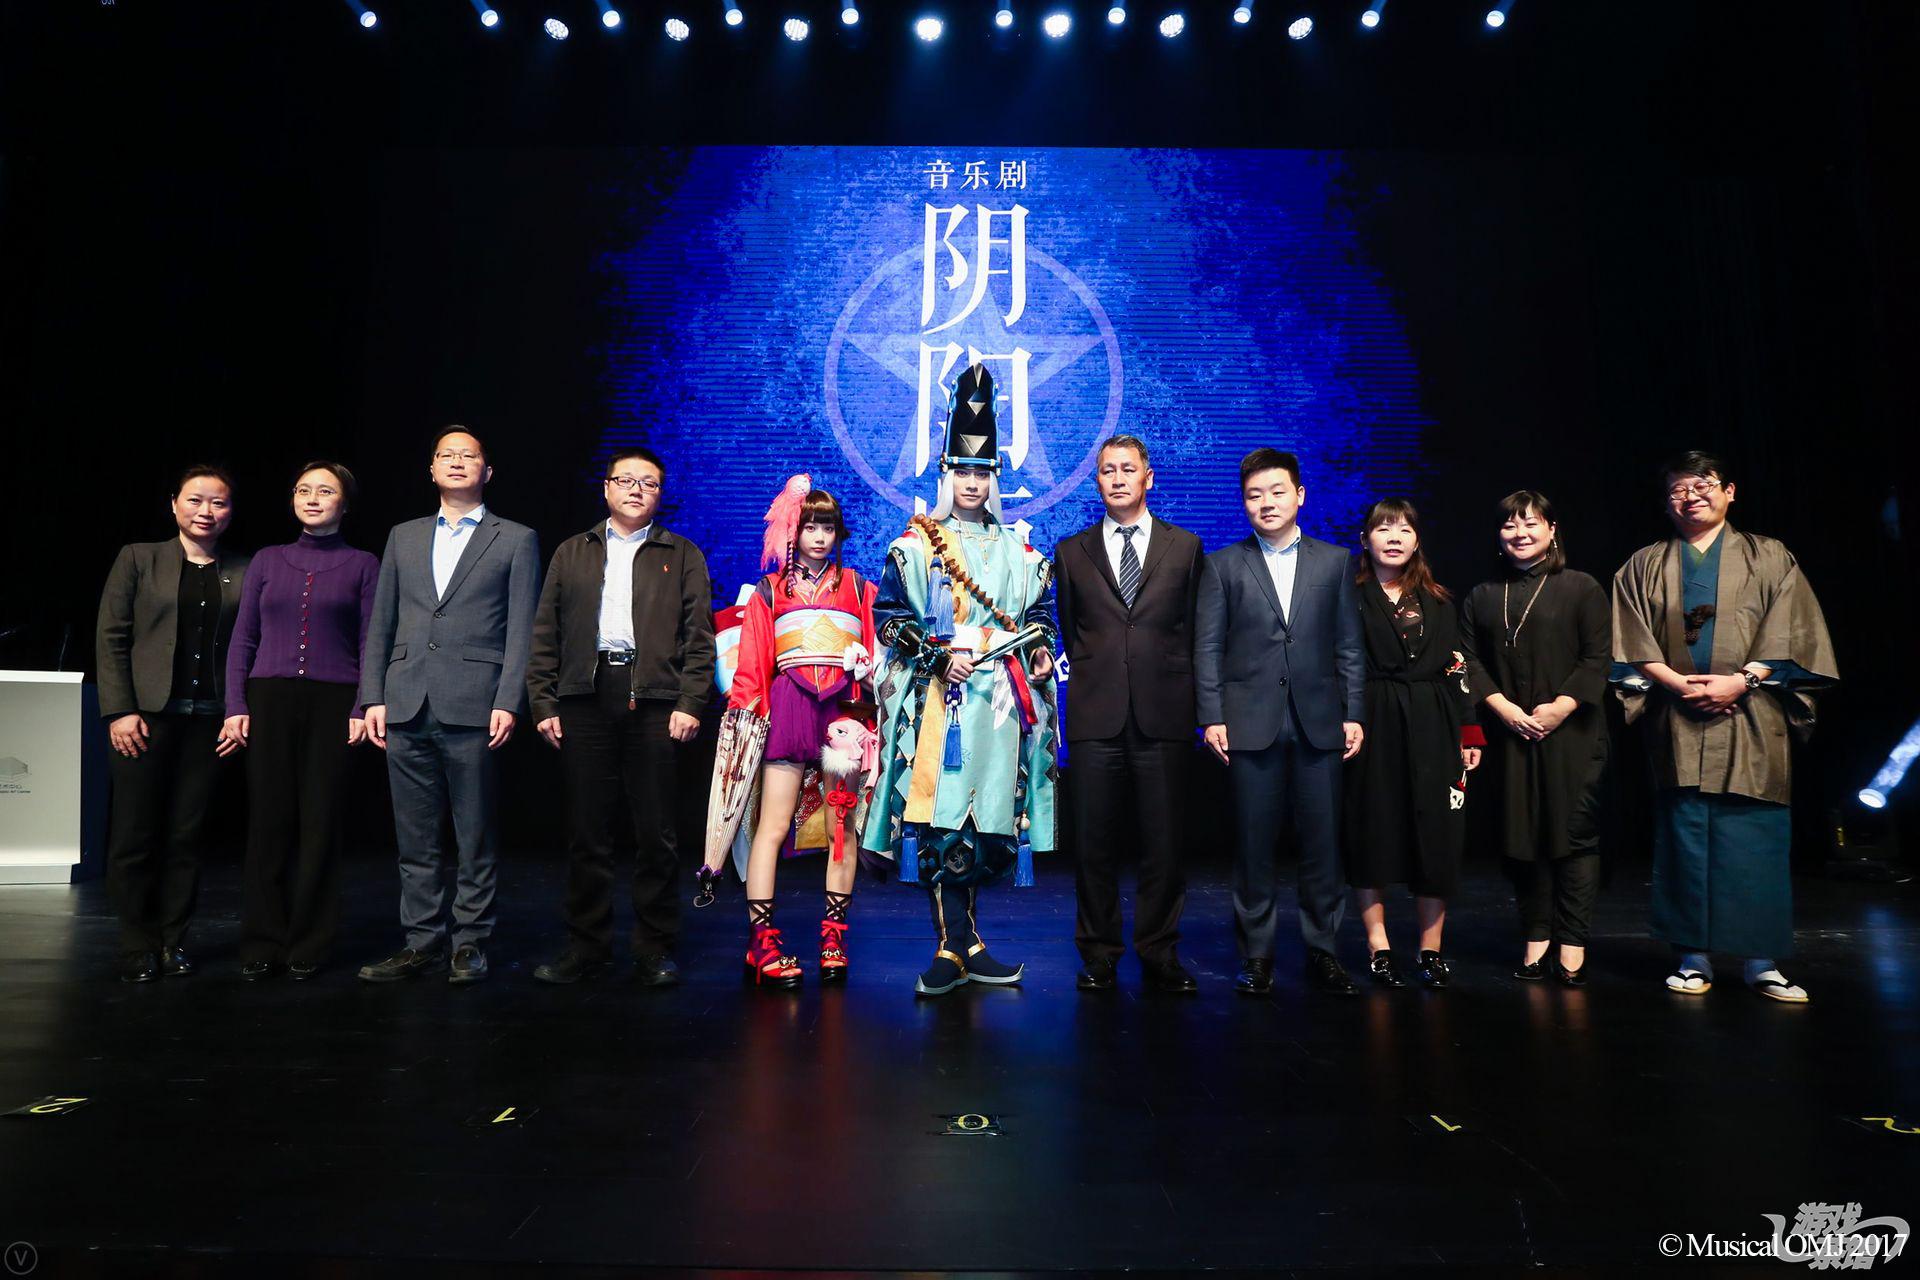 网易游戏联合日本奈尔可集团举办《阴阳师》音乐剧新闻发布会